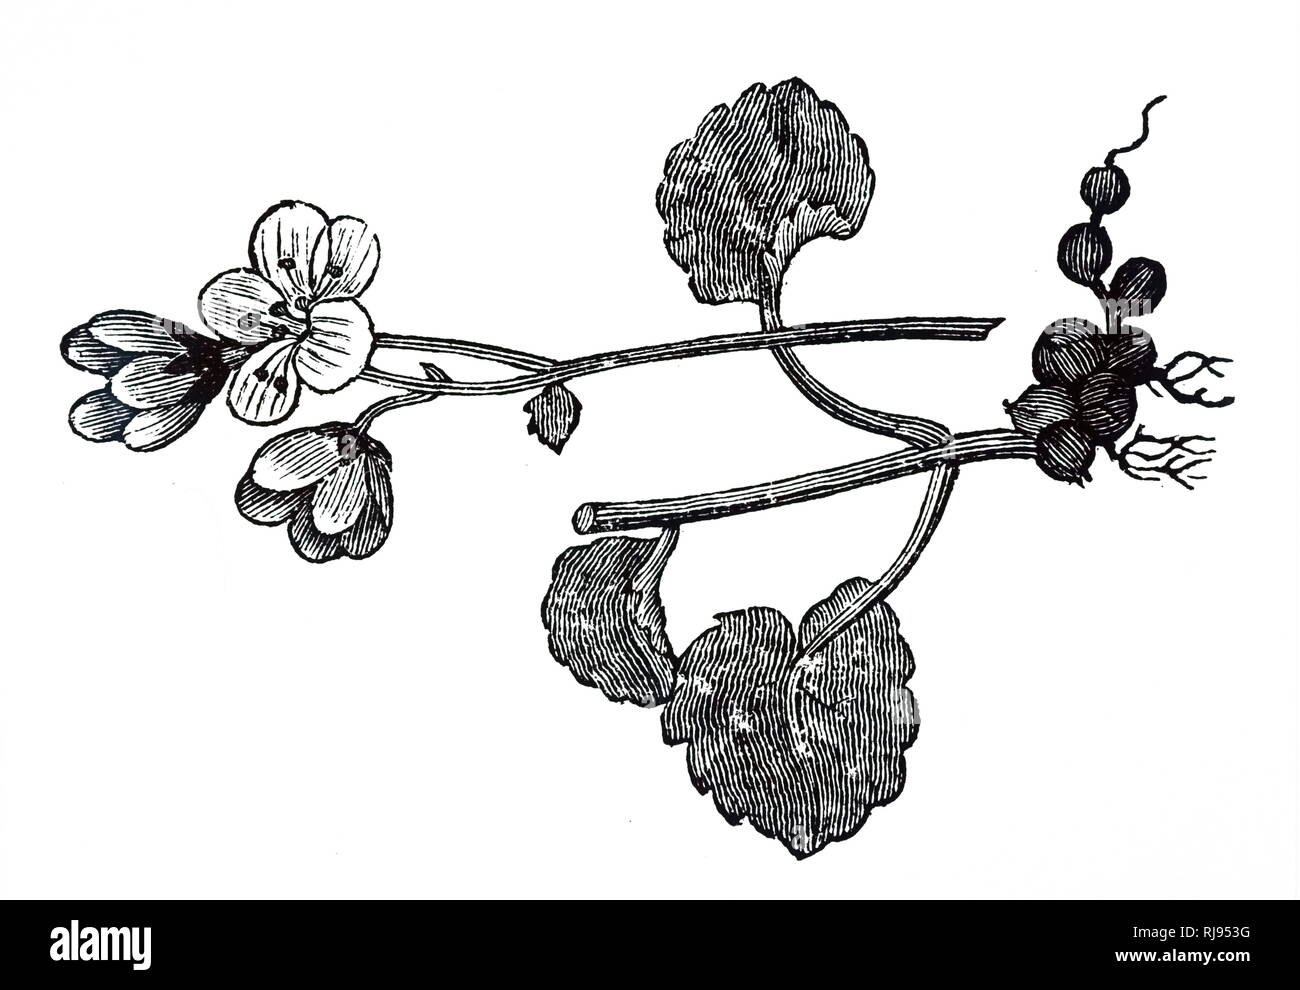 Una incisione raffigurante un campione di Saxifraga granulata, una specie di fioritura delle piante del genere Saxifraga. Datata del XIX secolo Foto Stock